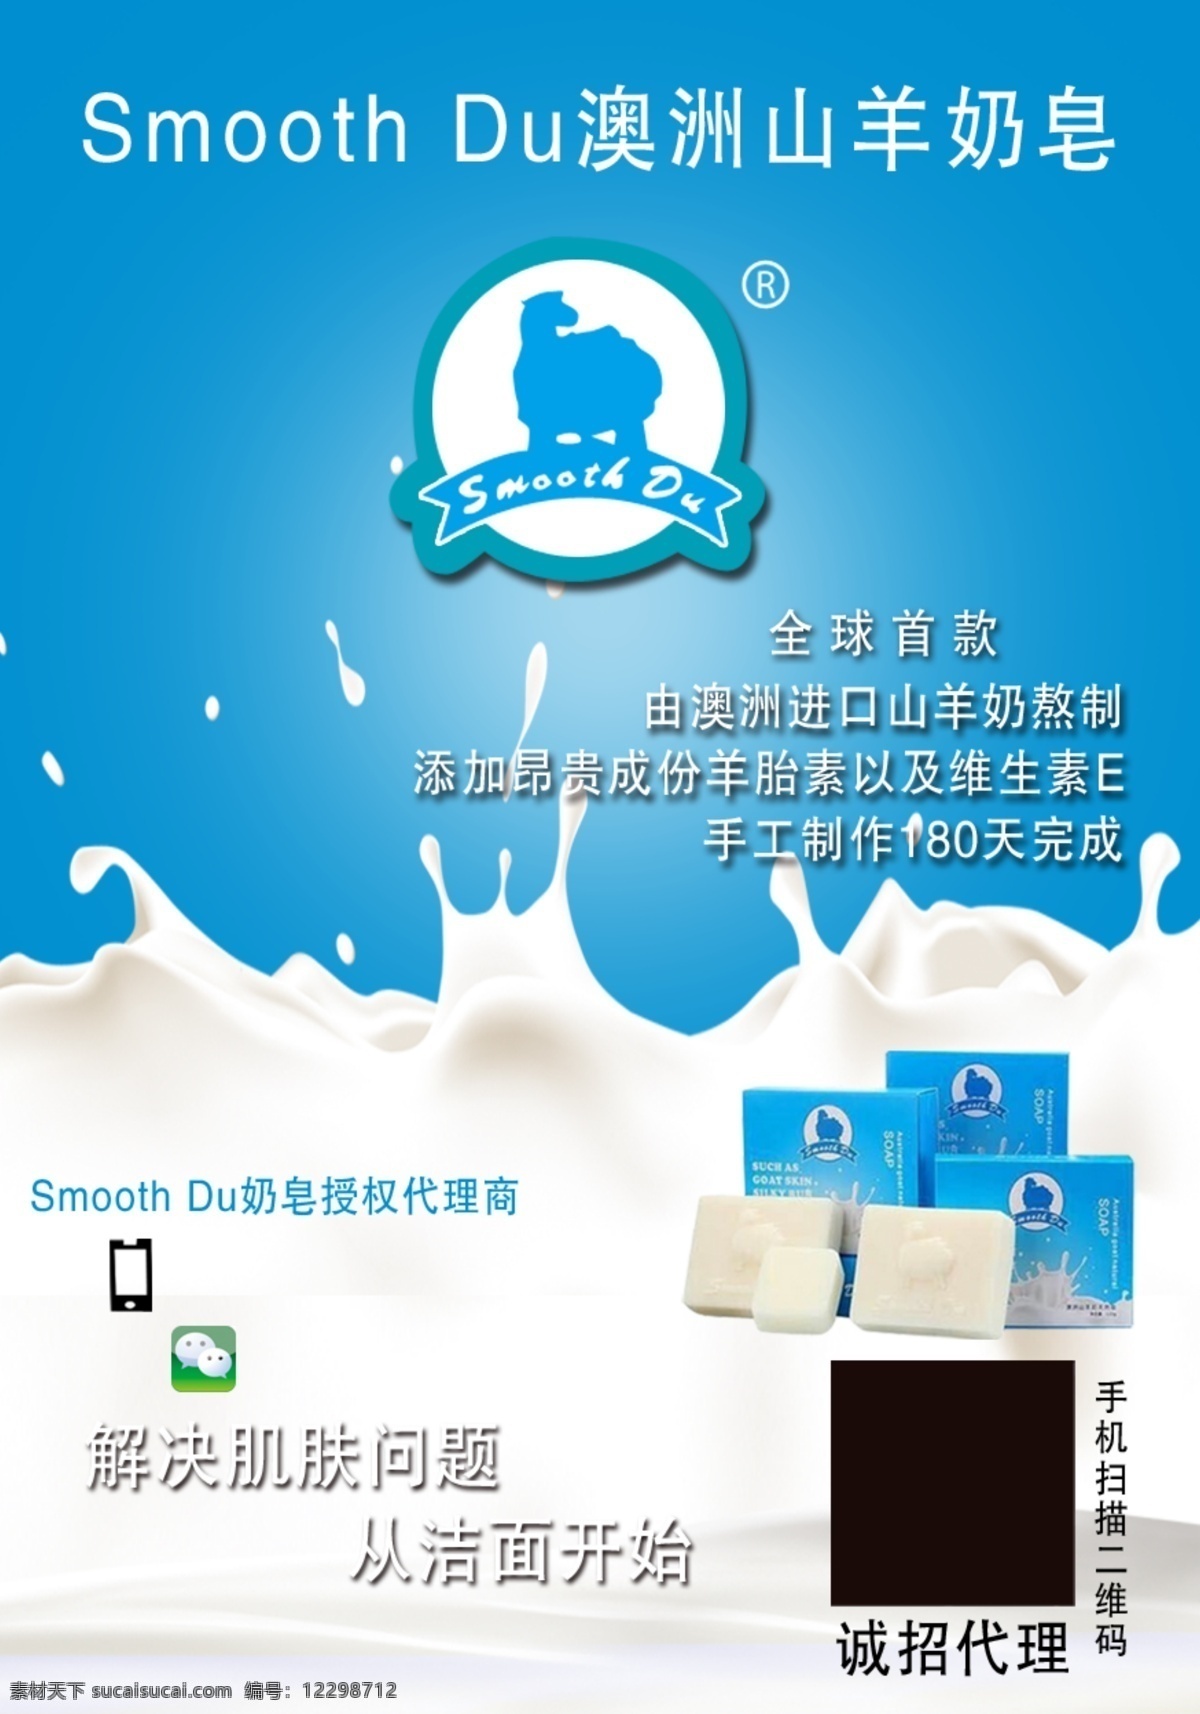 澳洲 山羊 奶 皂 产品 澳洲山羊奶皂 原创设计 原创海报